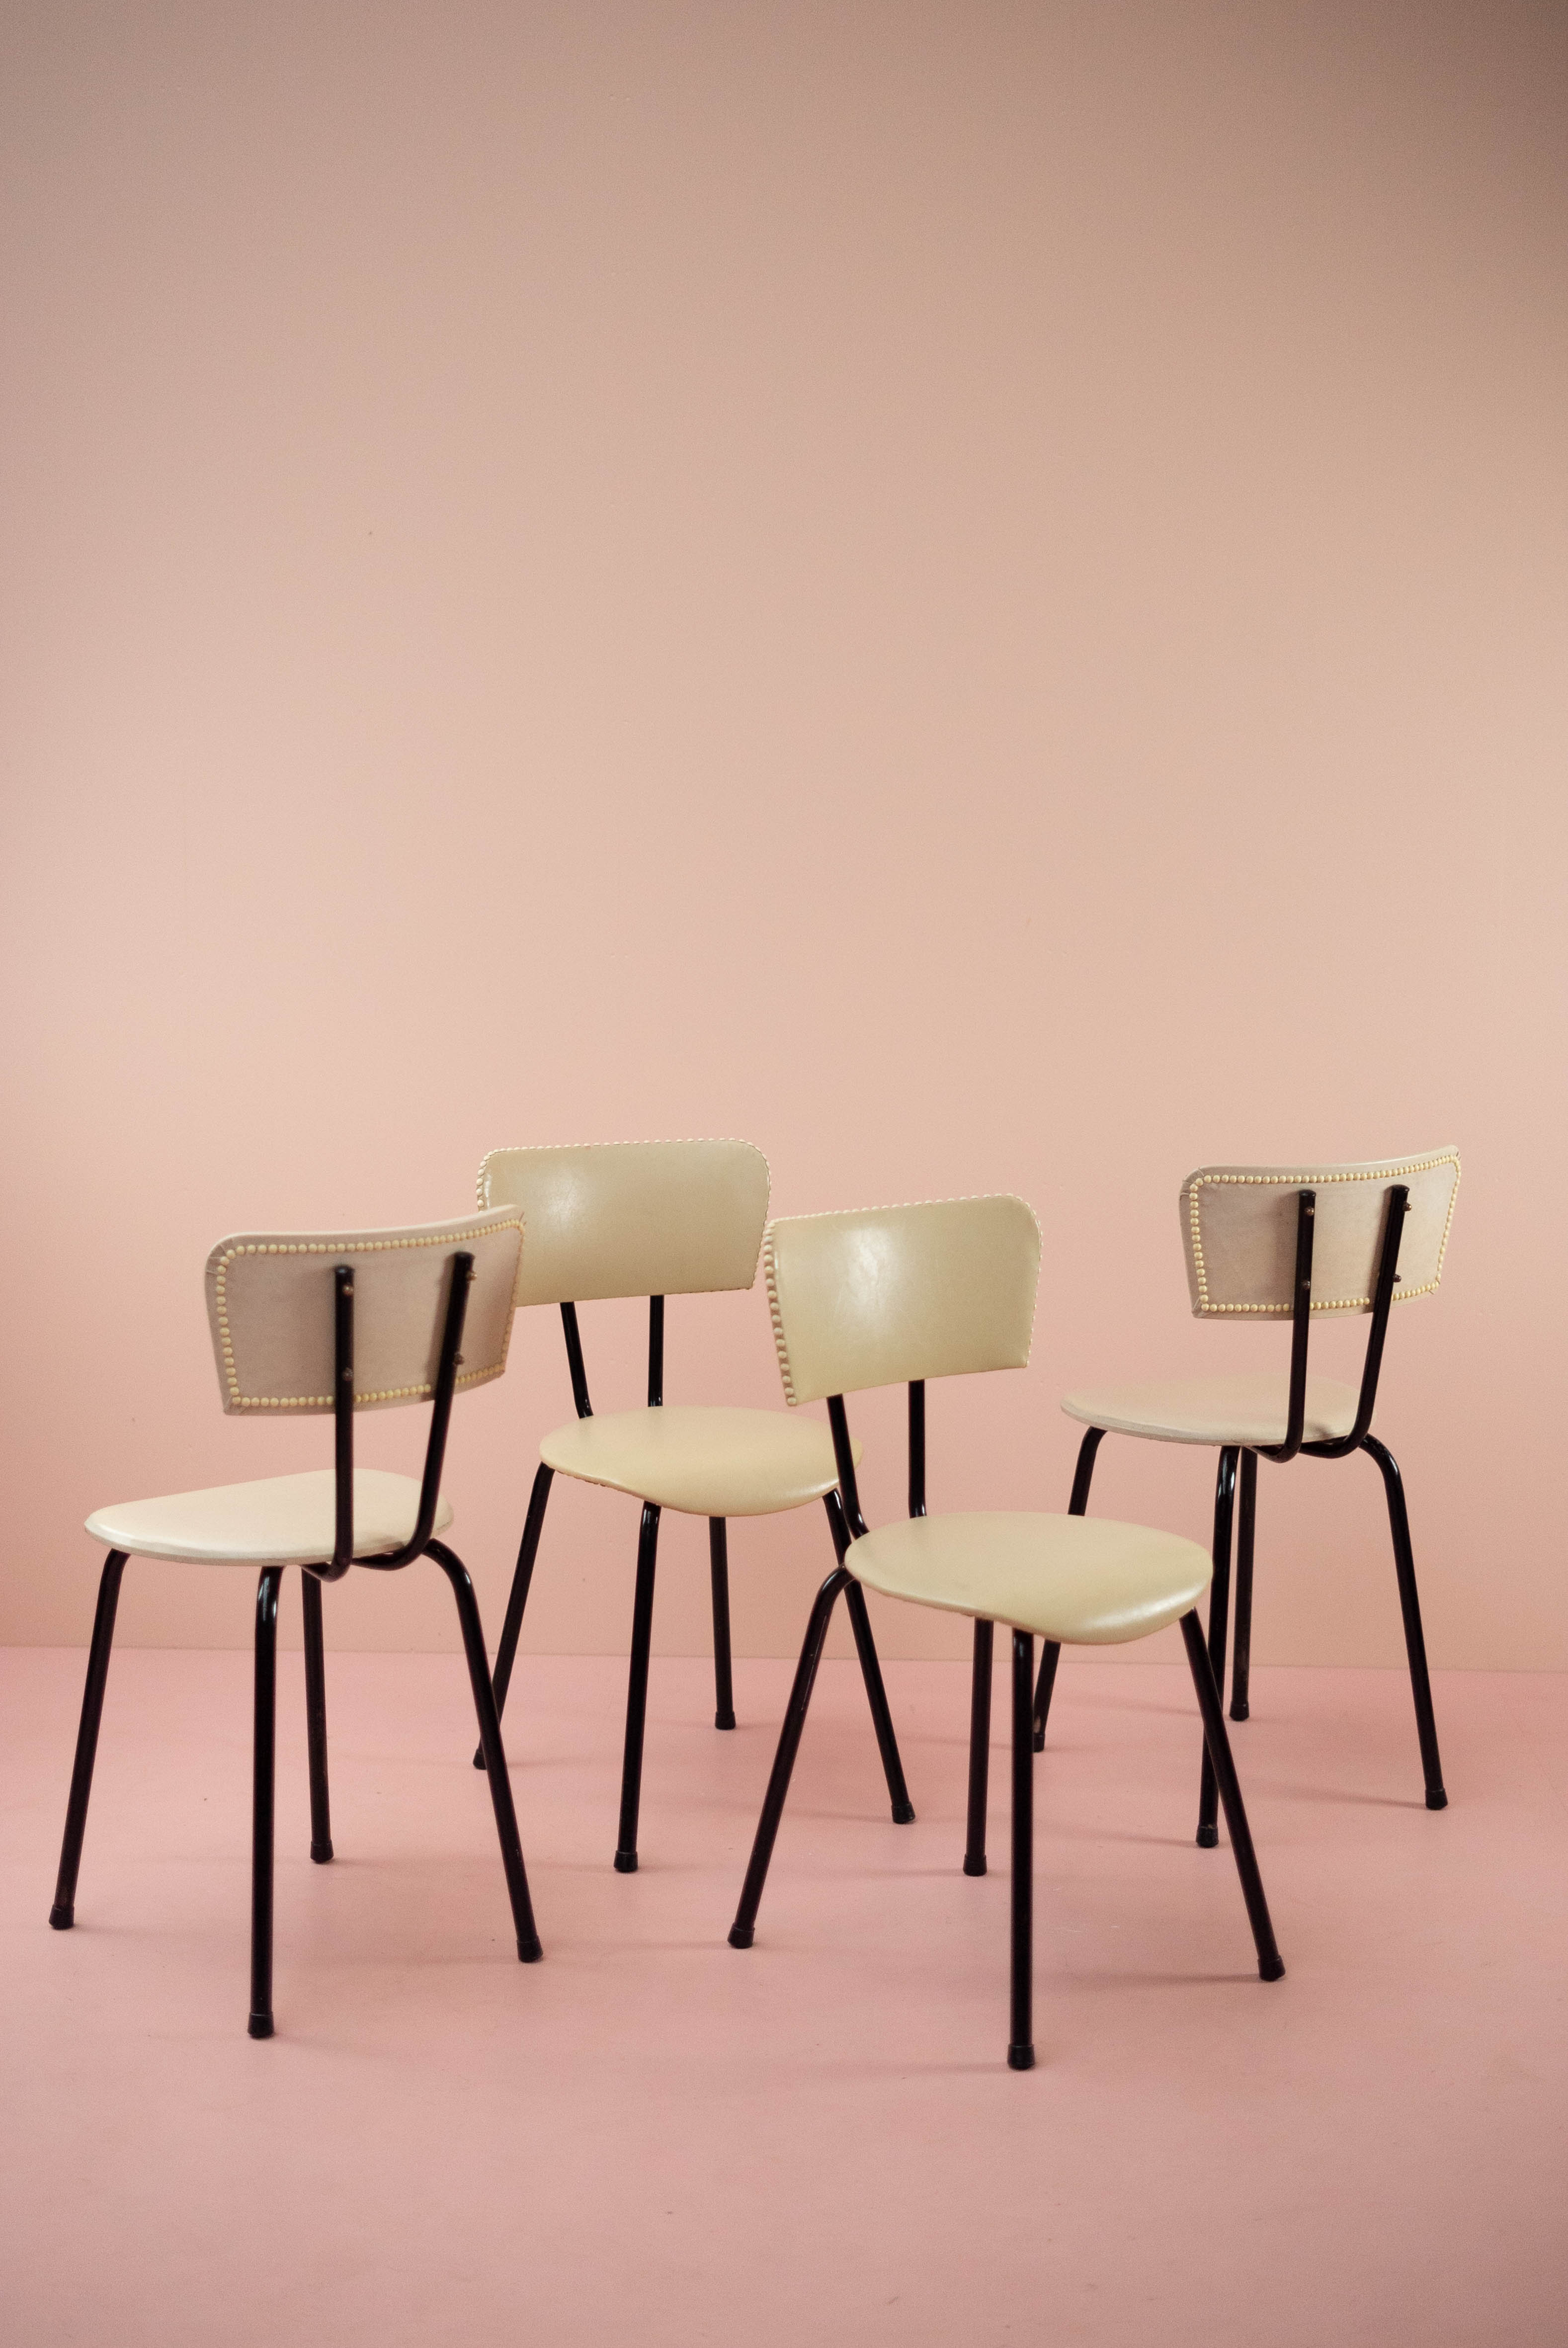 Schouderophalend Delegatie in tegenstelling tot Set van 4 vintage stoelen met witte skai – Hoarderlife